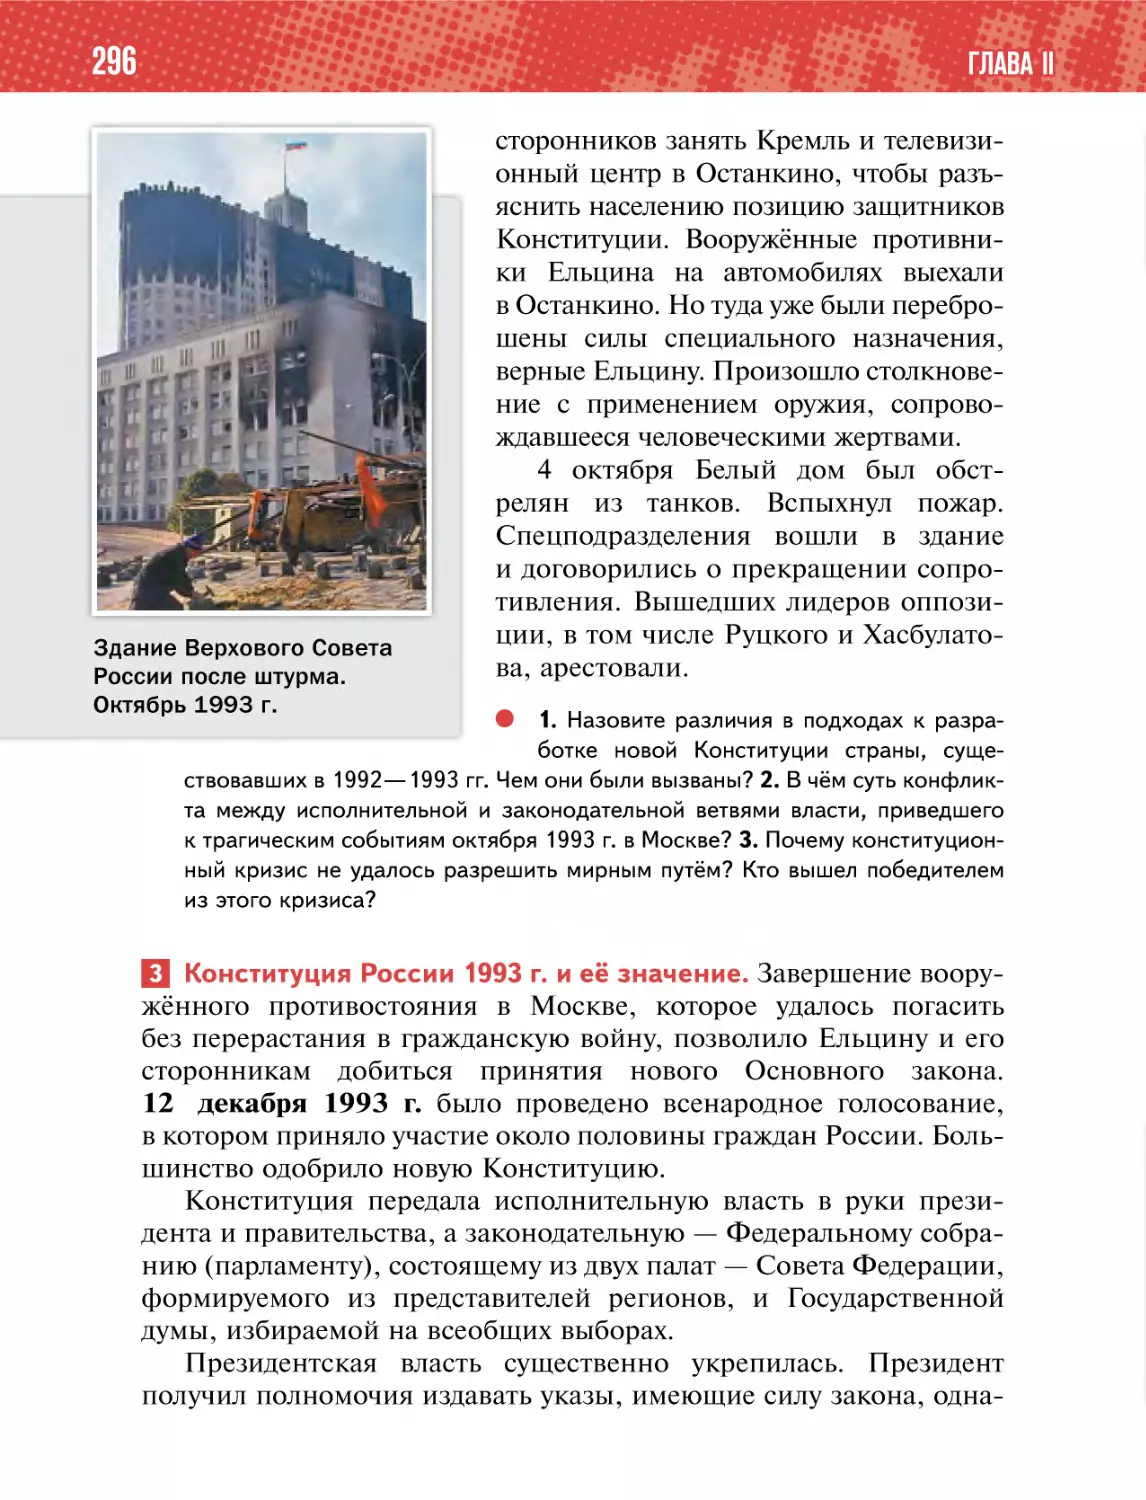 3 Конституция России 1993 г. и её значение.